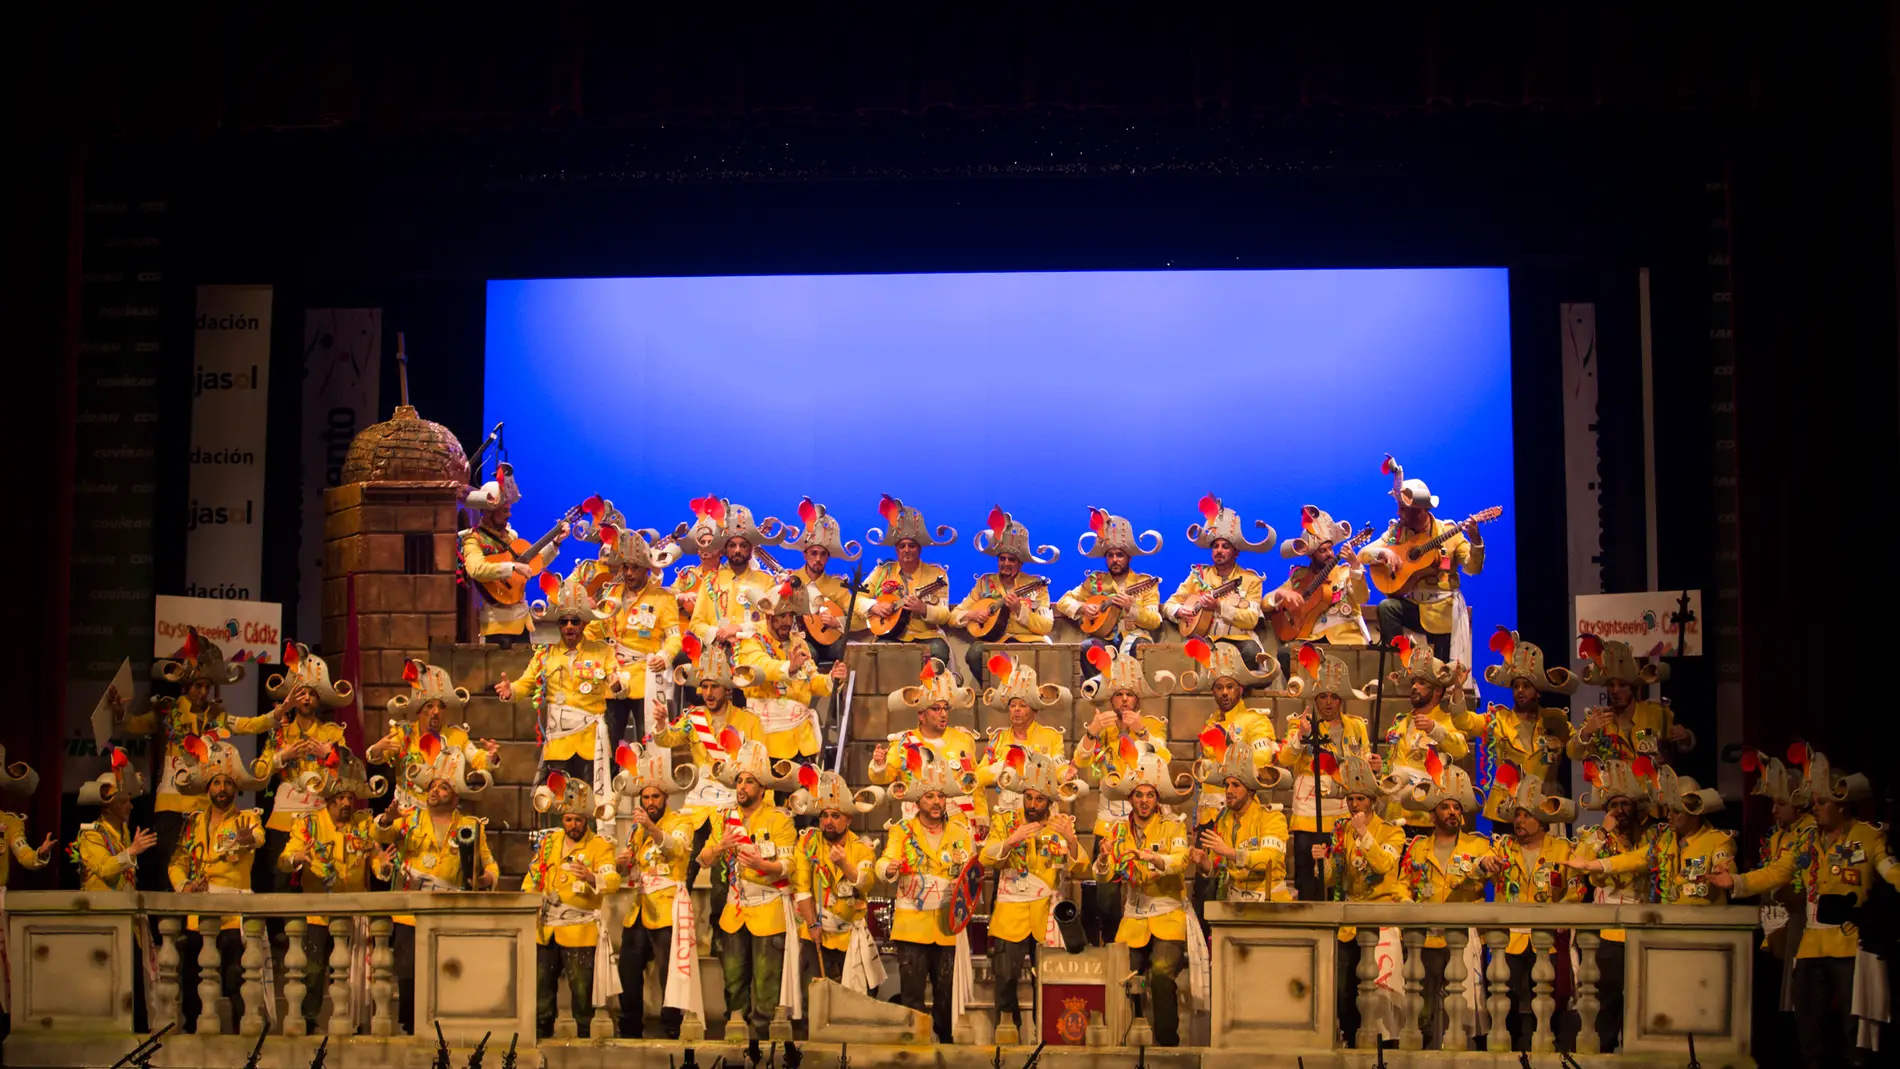 El Carnaval de Cádiz se celebra durante varias semanas en el Gran Teatro Falla